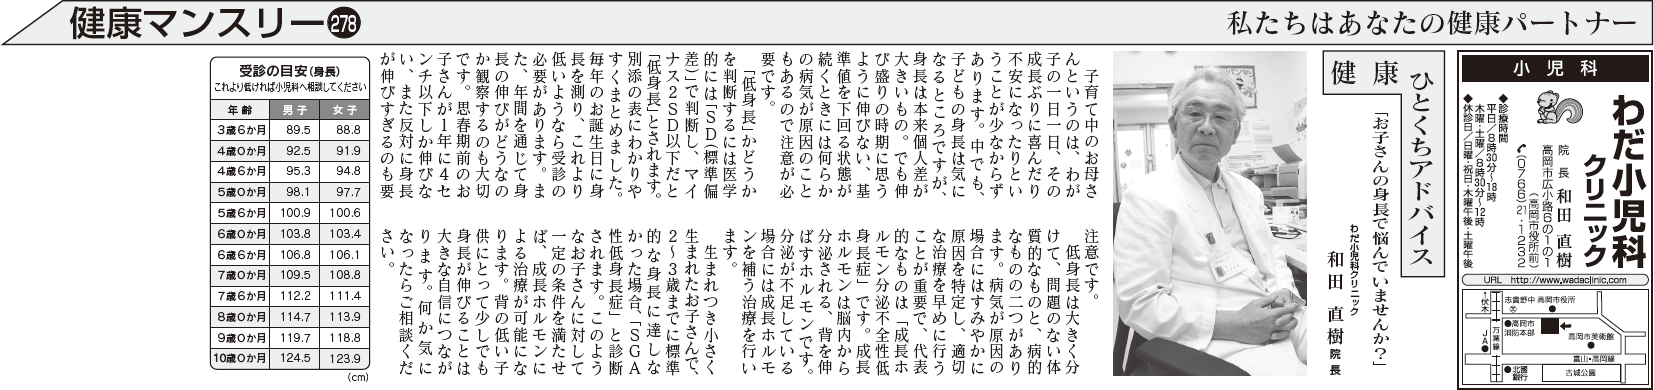 北日本新聞「健康マンスリー」2015年2月